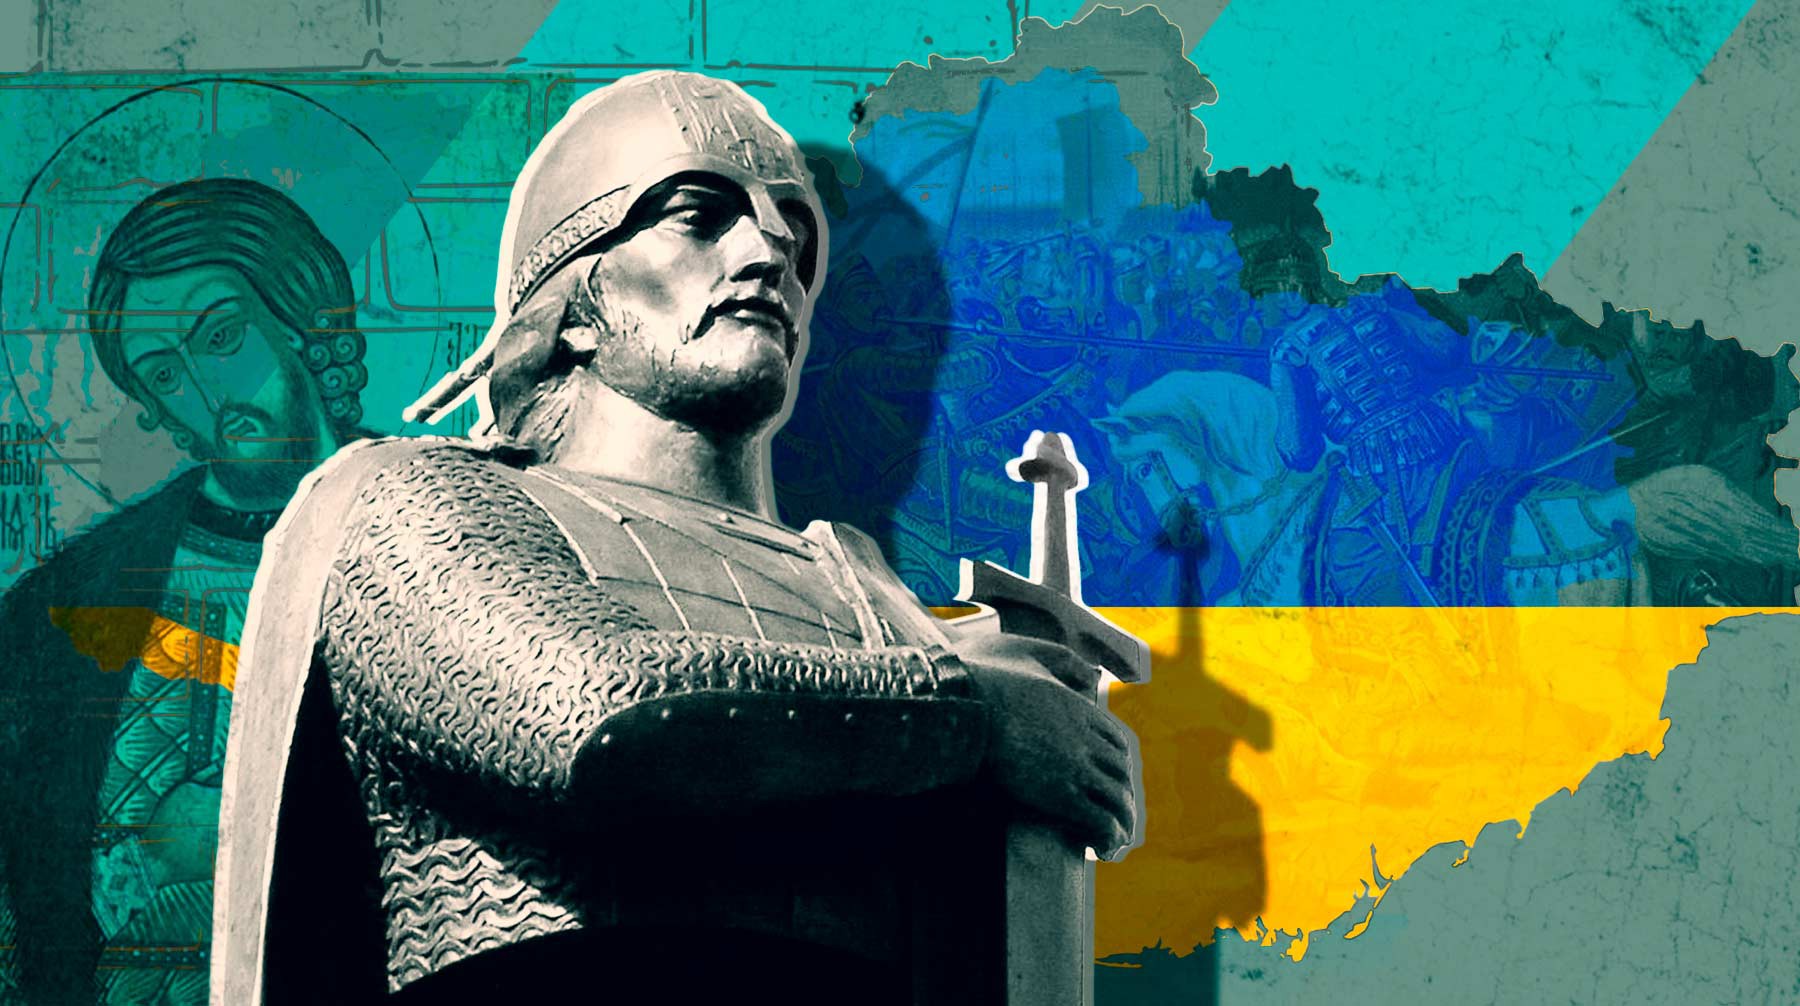 Dailystorm - В Харькове снесли памятник Александру Невскому. Перестанут ли считать князя святым на Украине?